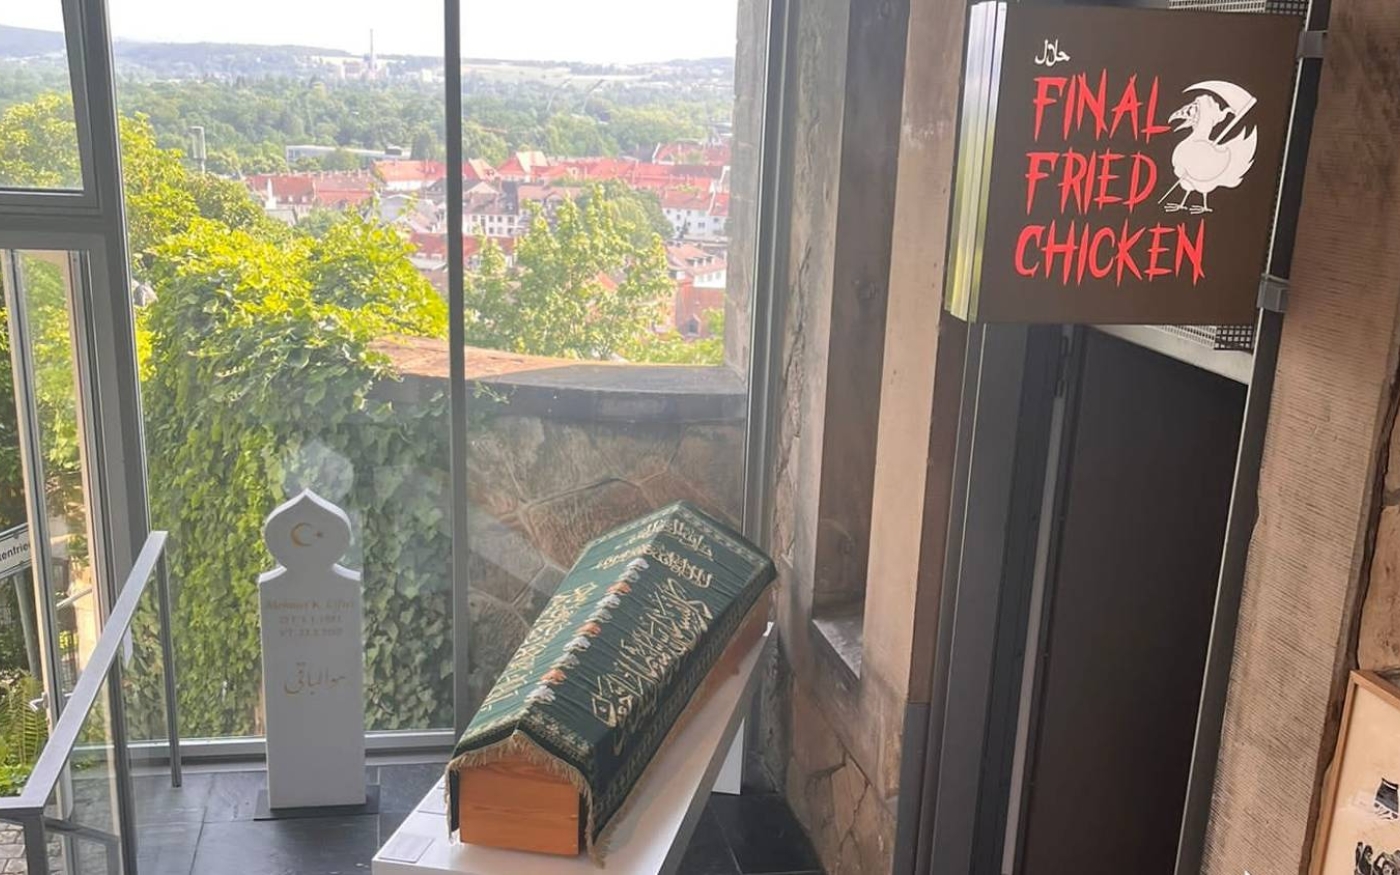 L’installation « Final Fried Chicken » de Hamja Ahsan rend hommage aux programmes turcs inspirés de l’époque ottomane, comme la série télévisée Diriliş: Ertuğrul (Hamja Ahsan)